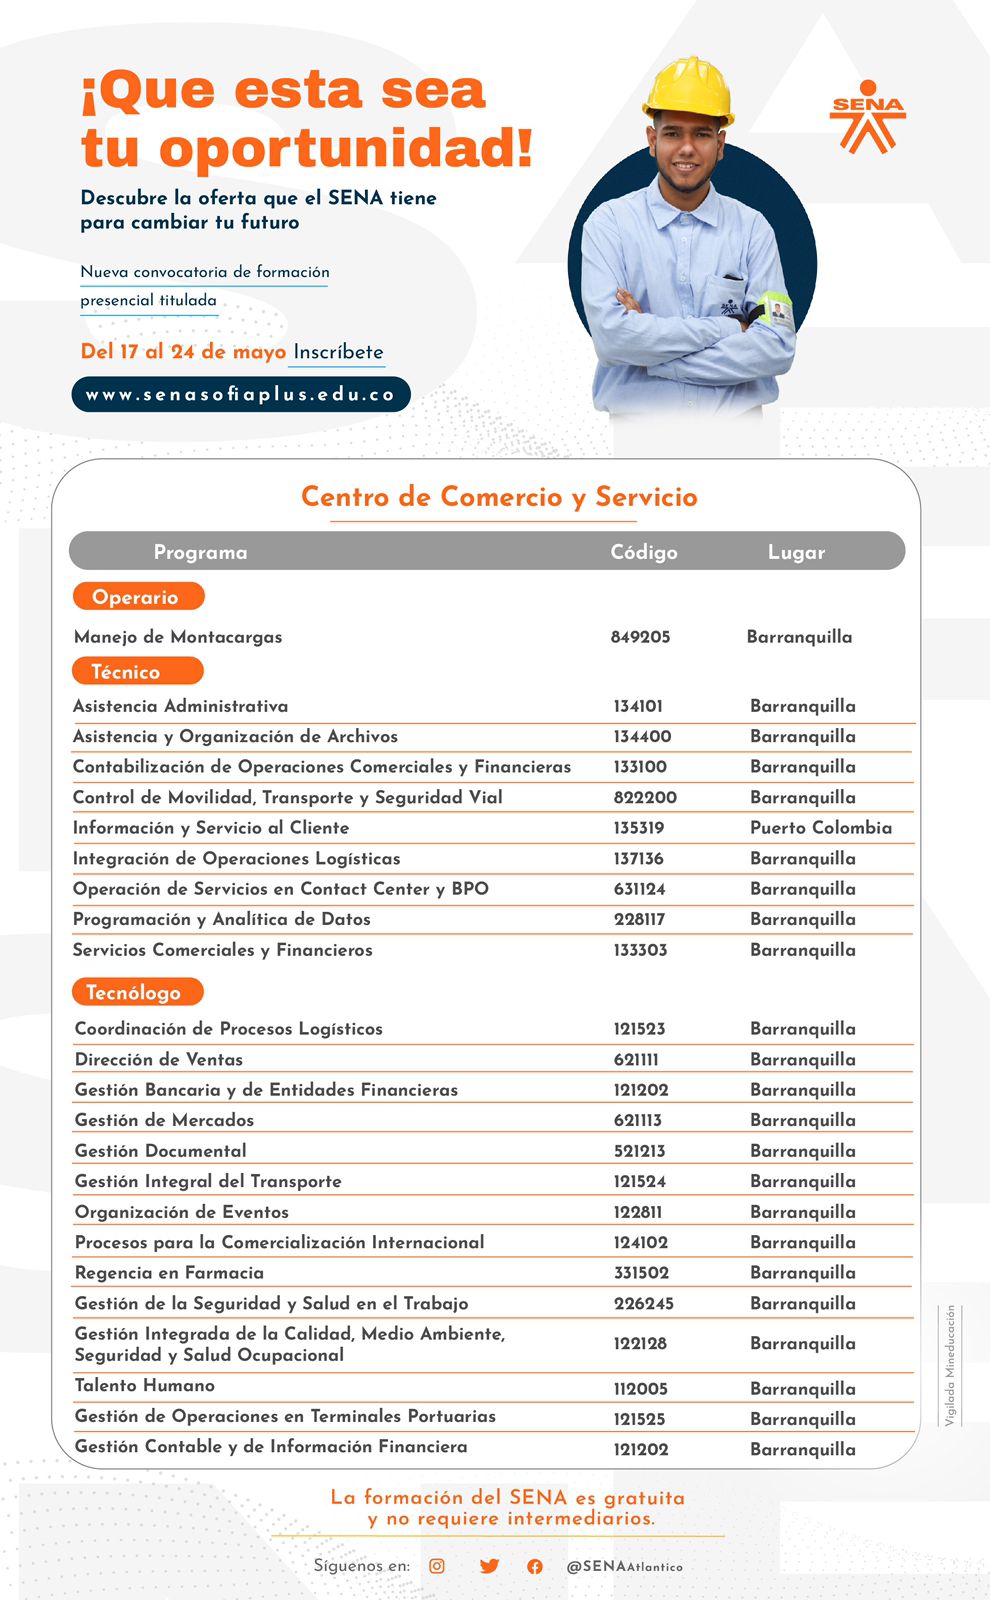 Carreras del Centro de Comercio y Servicio del Sena.